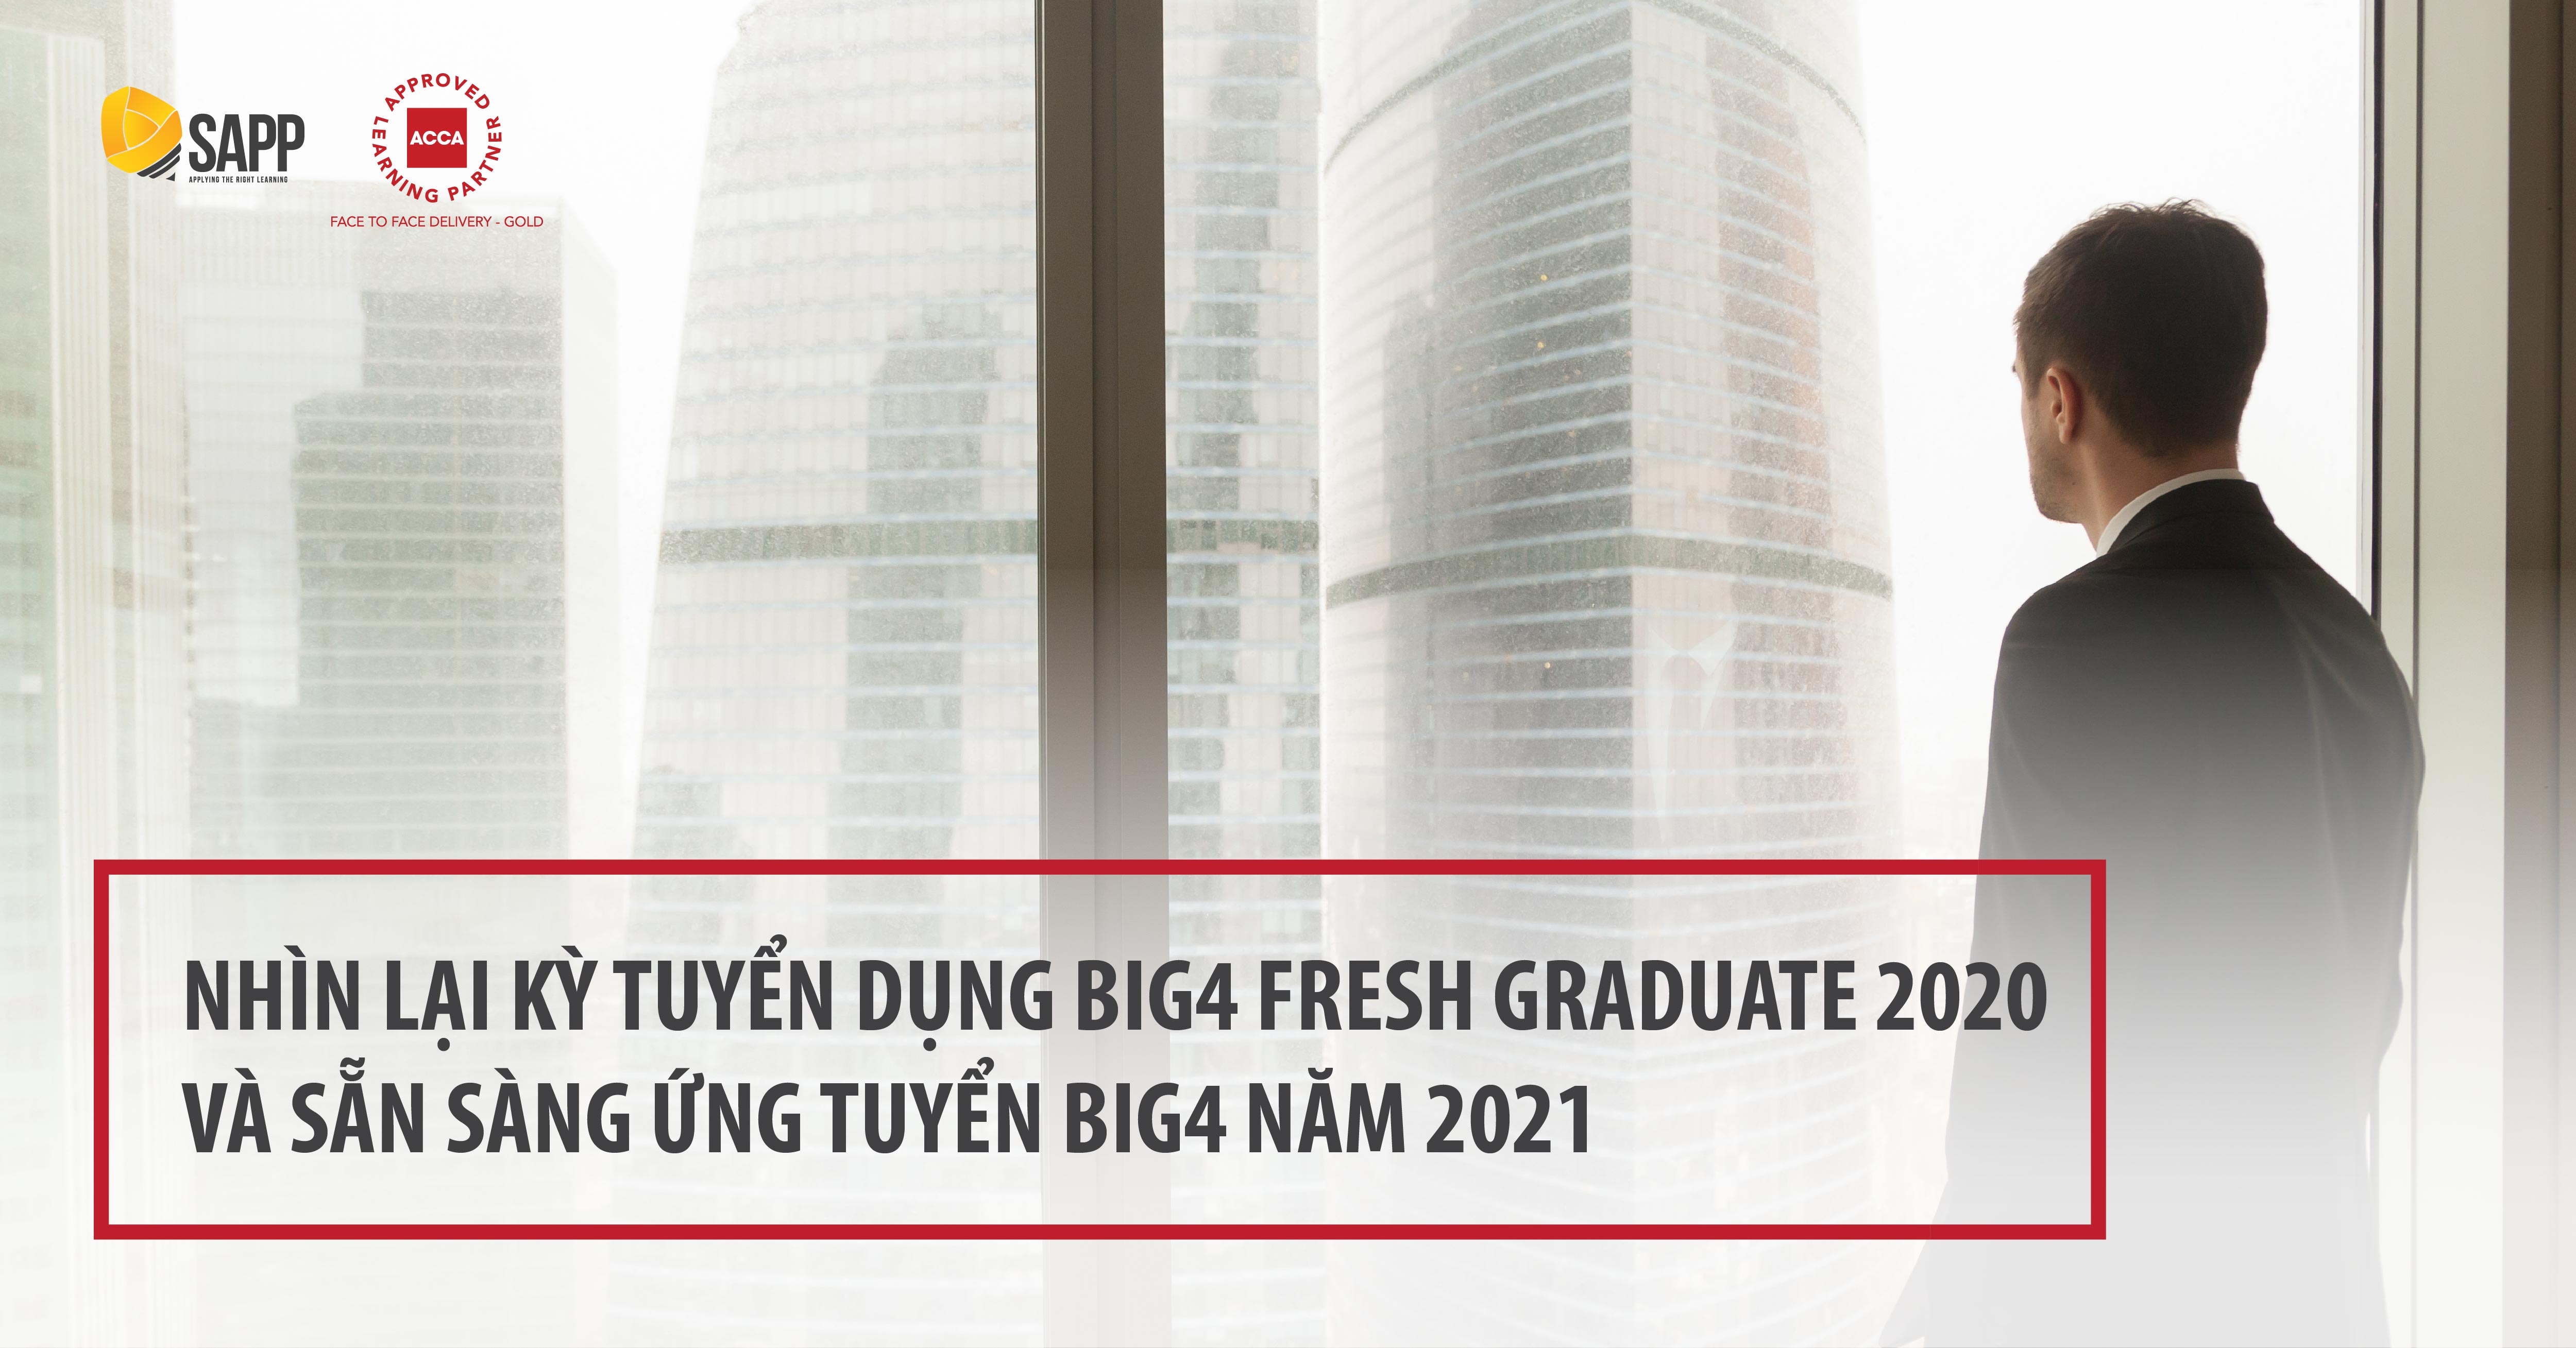 Nhìn lại kỳ tuyển dụng BIG4 Fresh Graduate 2020 và sẵn sàng ứng tuyển BIG4 năm 2021